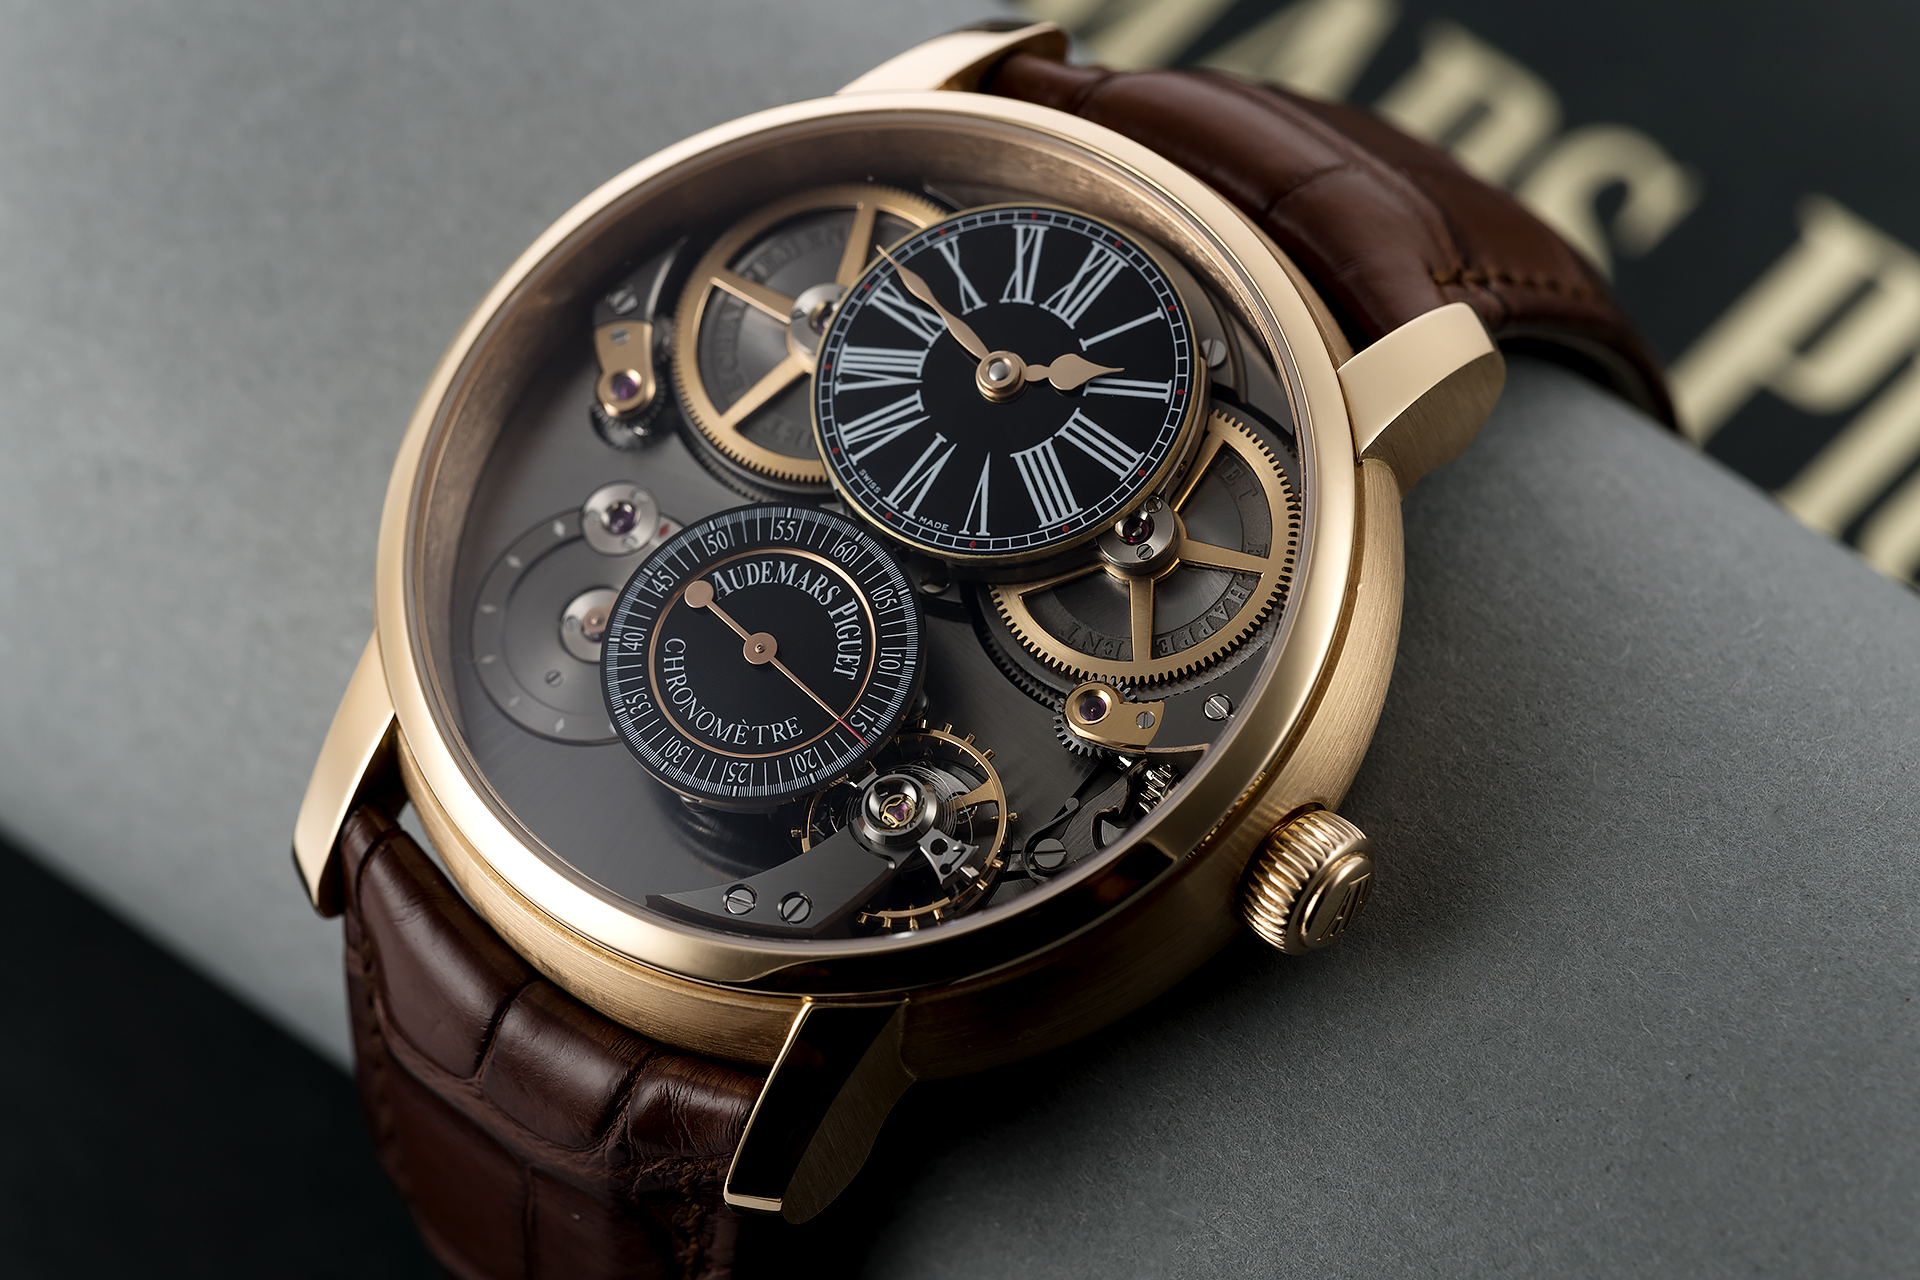 Audemars Piguet Jules Audemars Chronometer Watches | ref 26153OR.OO ...